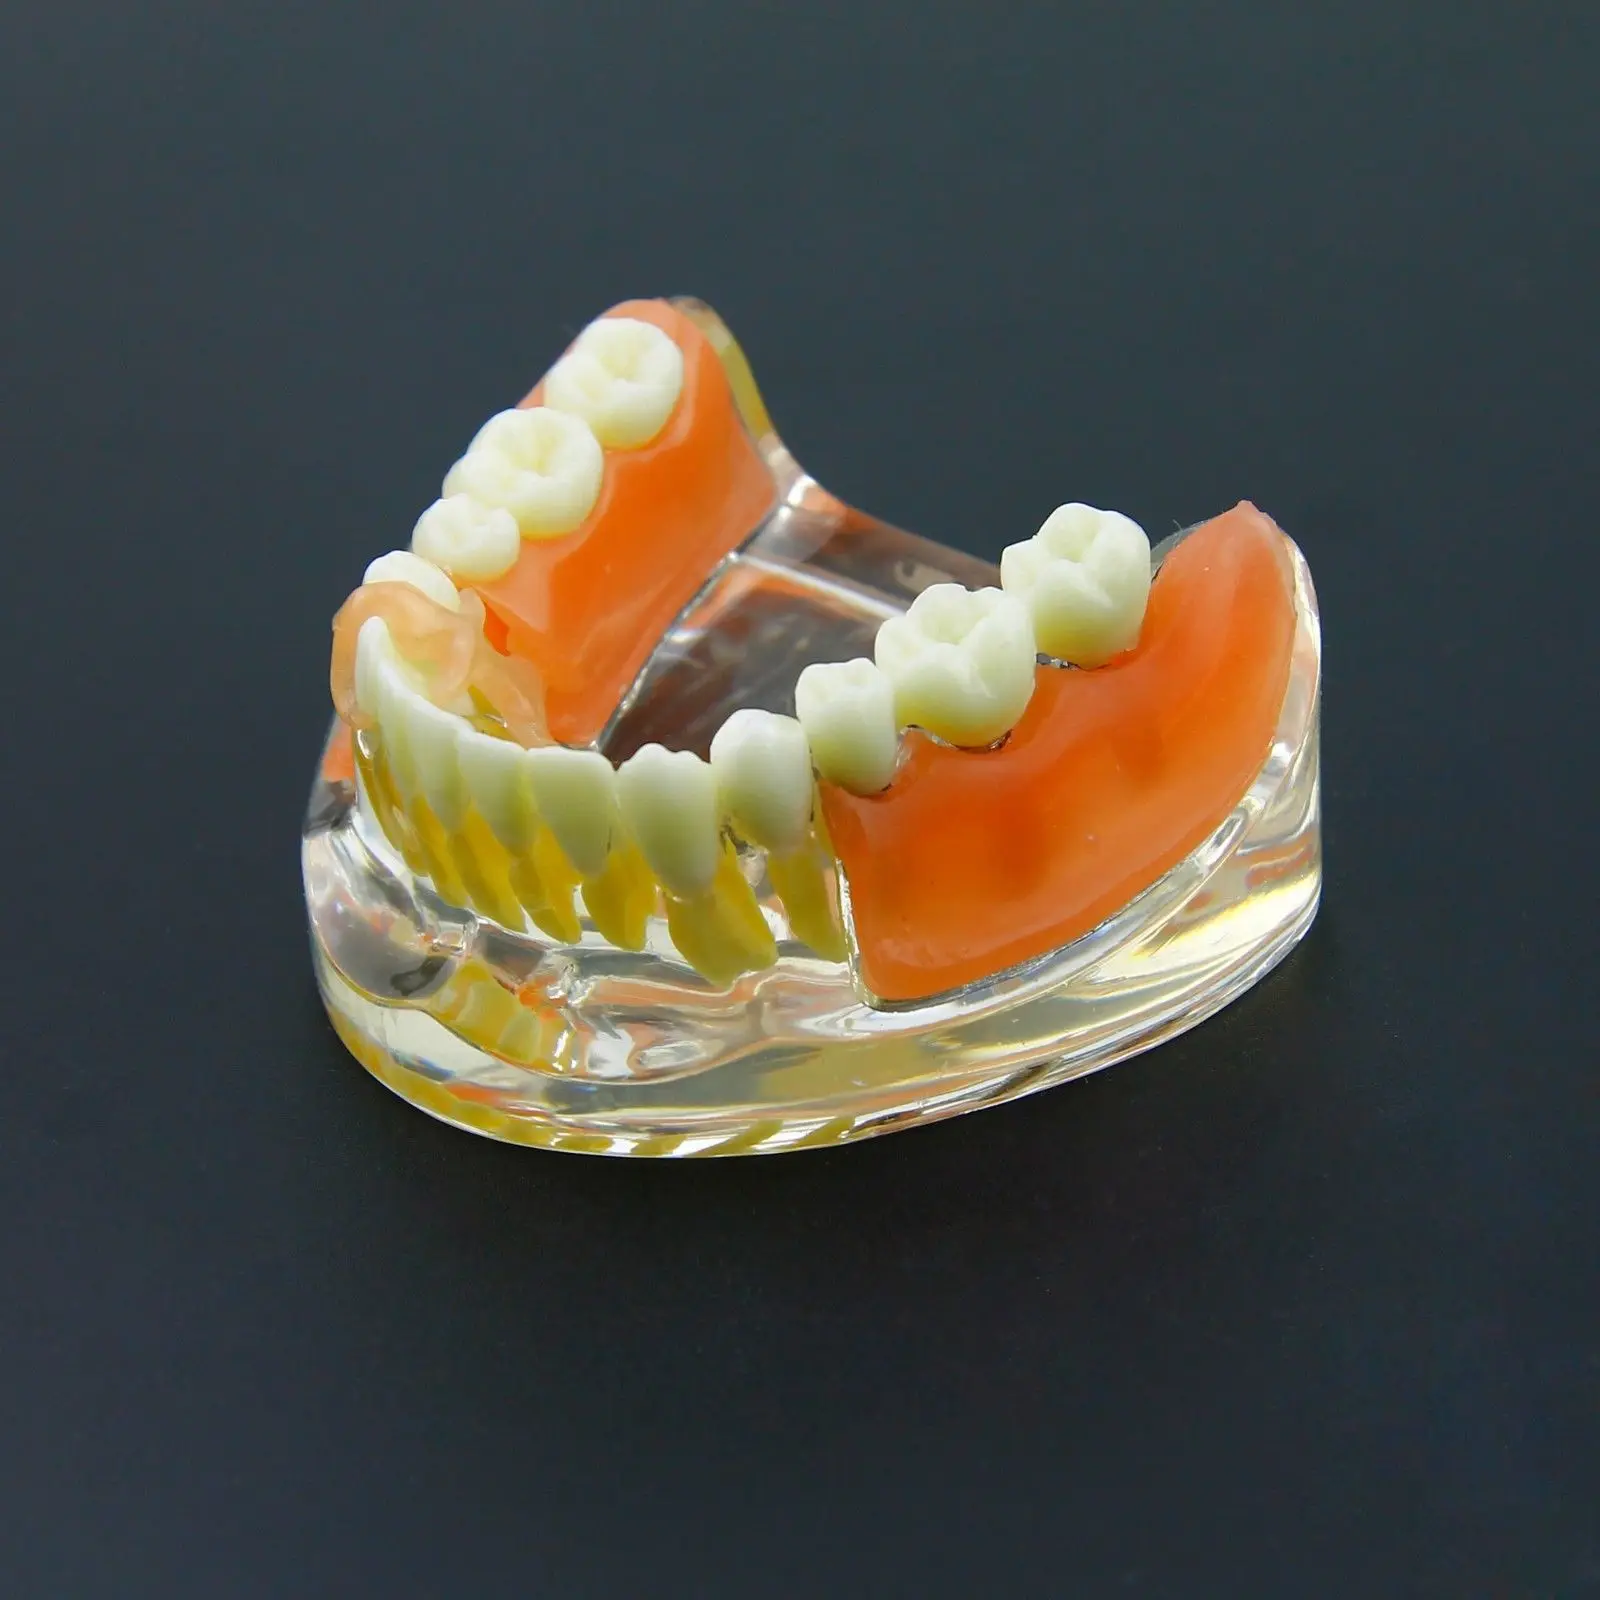 Акриловые зубные протезы отзывы и цены в москве